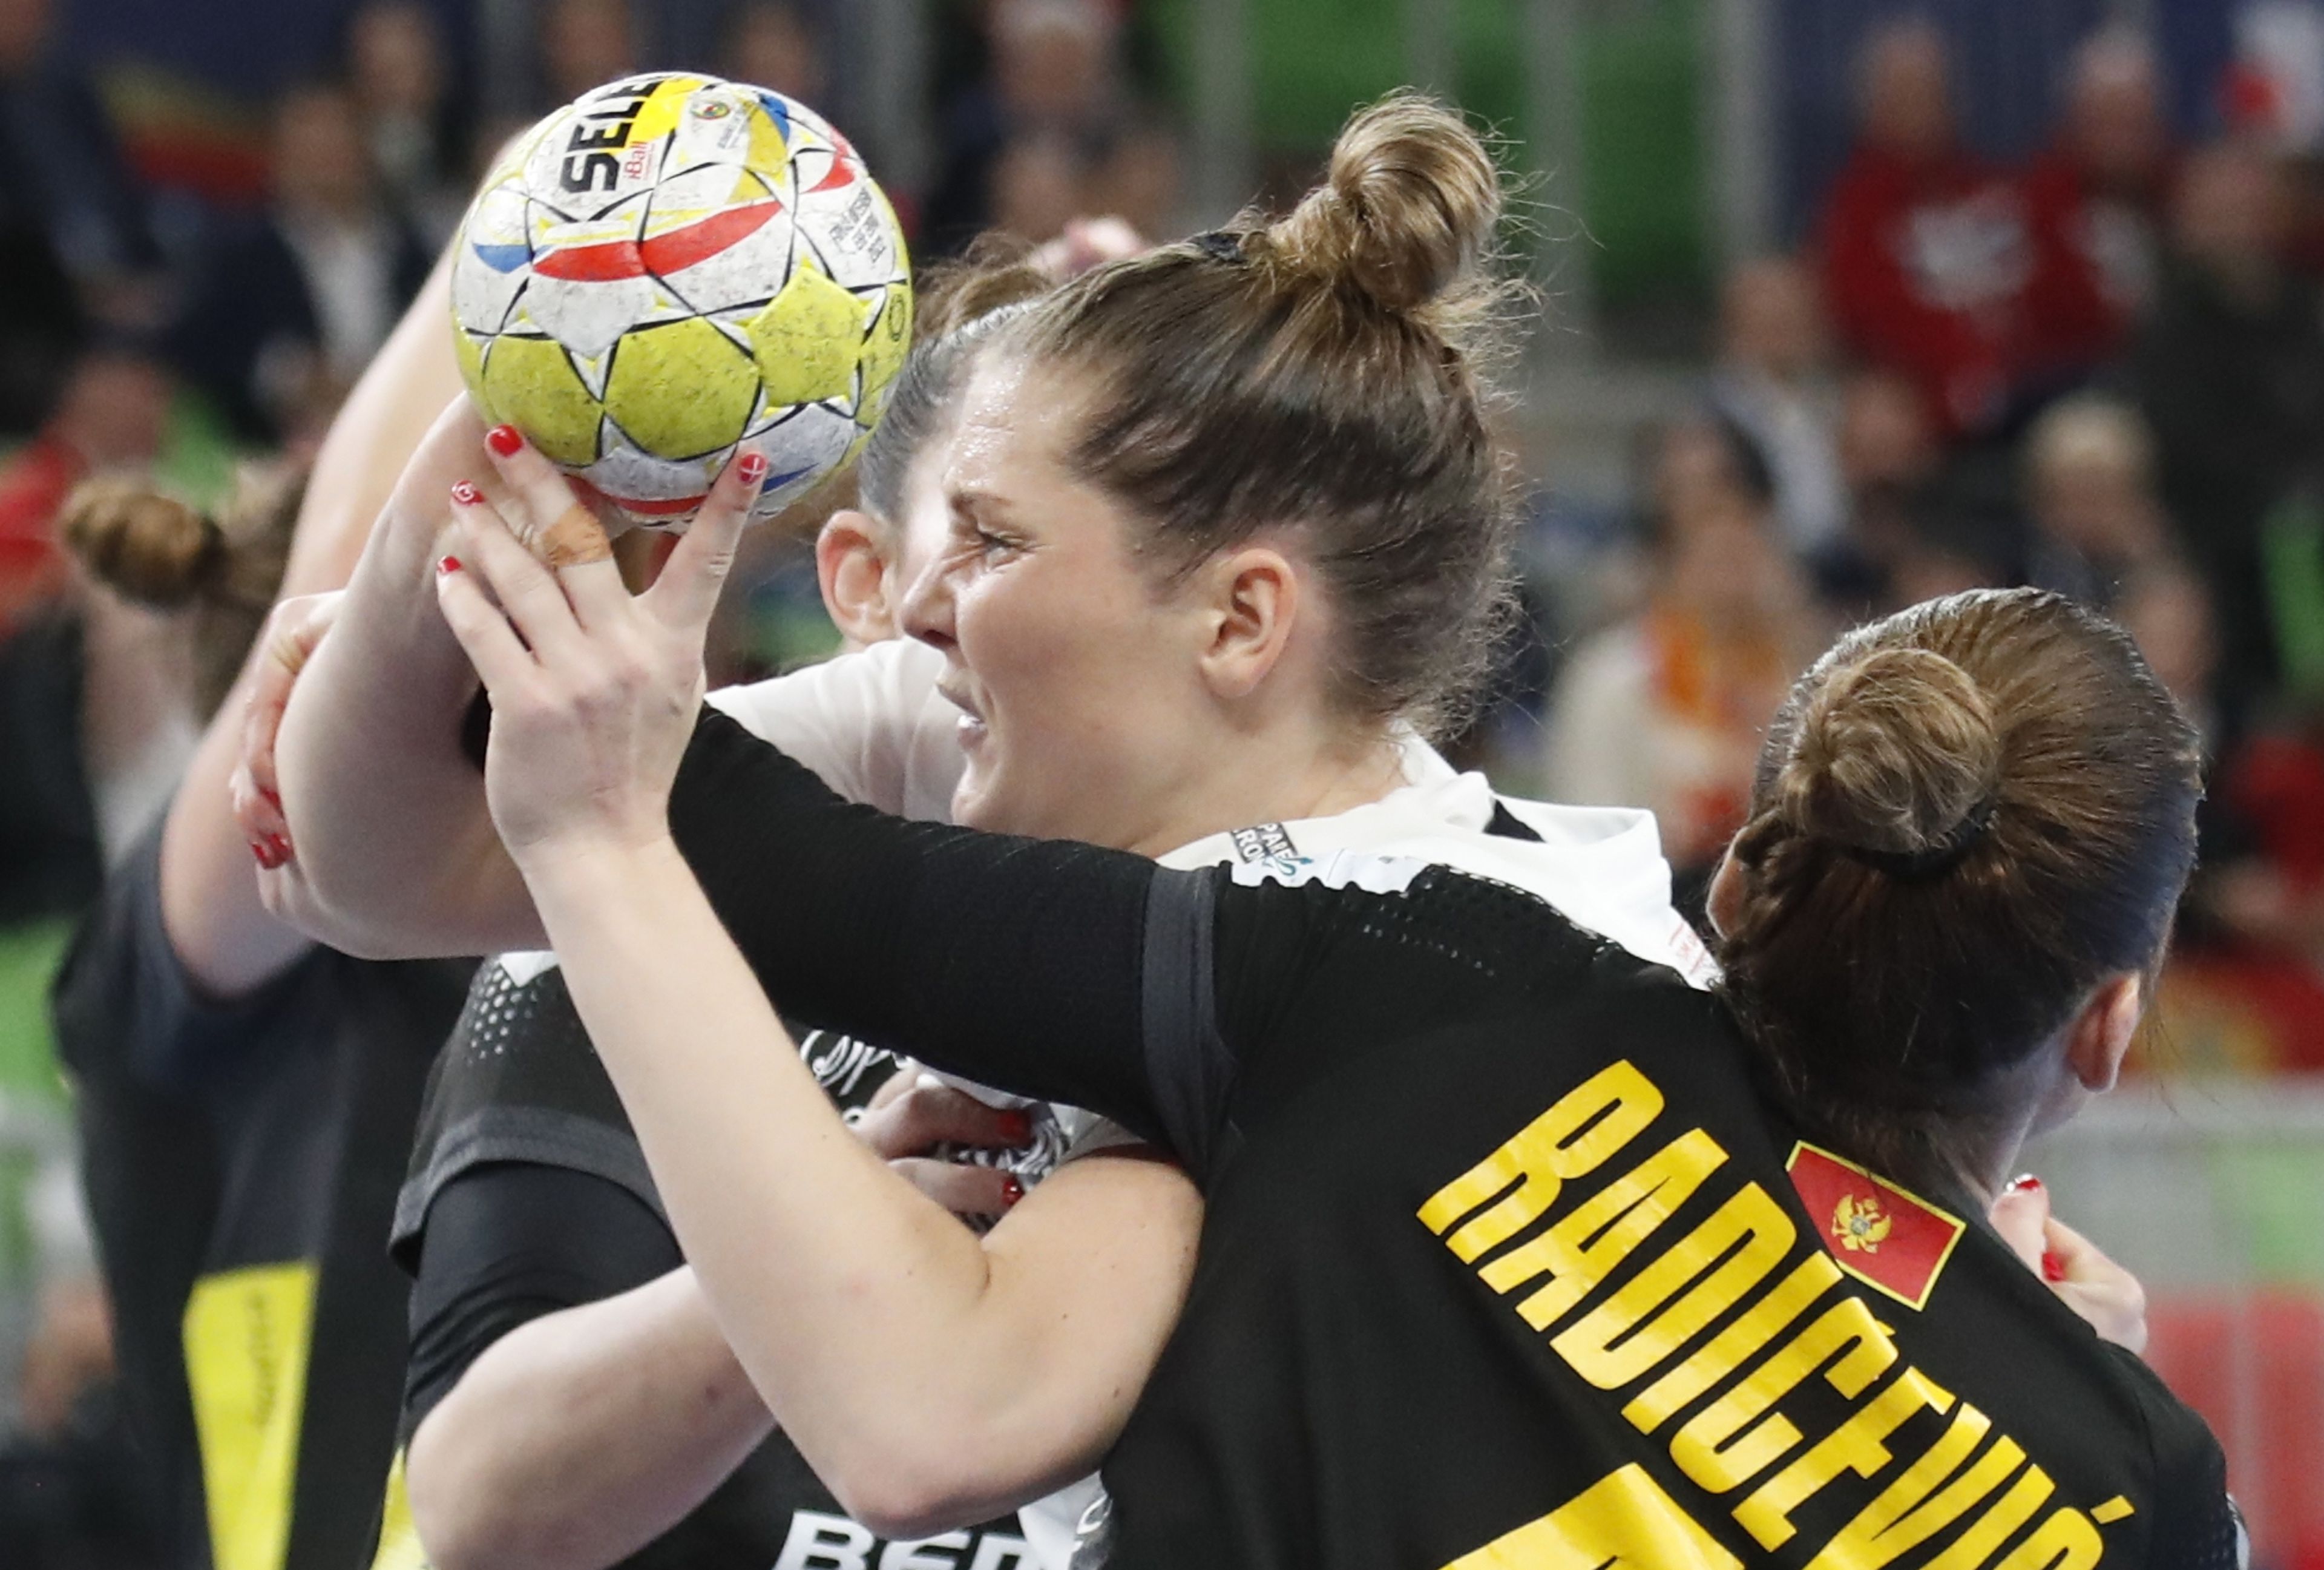 Rikke Iversen és Jovanka Radicsevics harcol a labdáért a Dánia–Montenegró Eb-elődöntőben (Fotó: EPA/Antonio Bat)